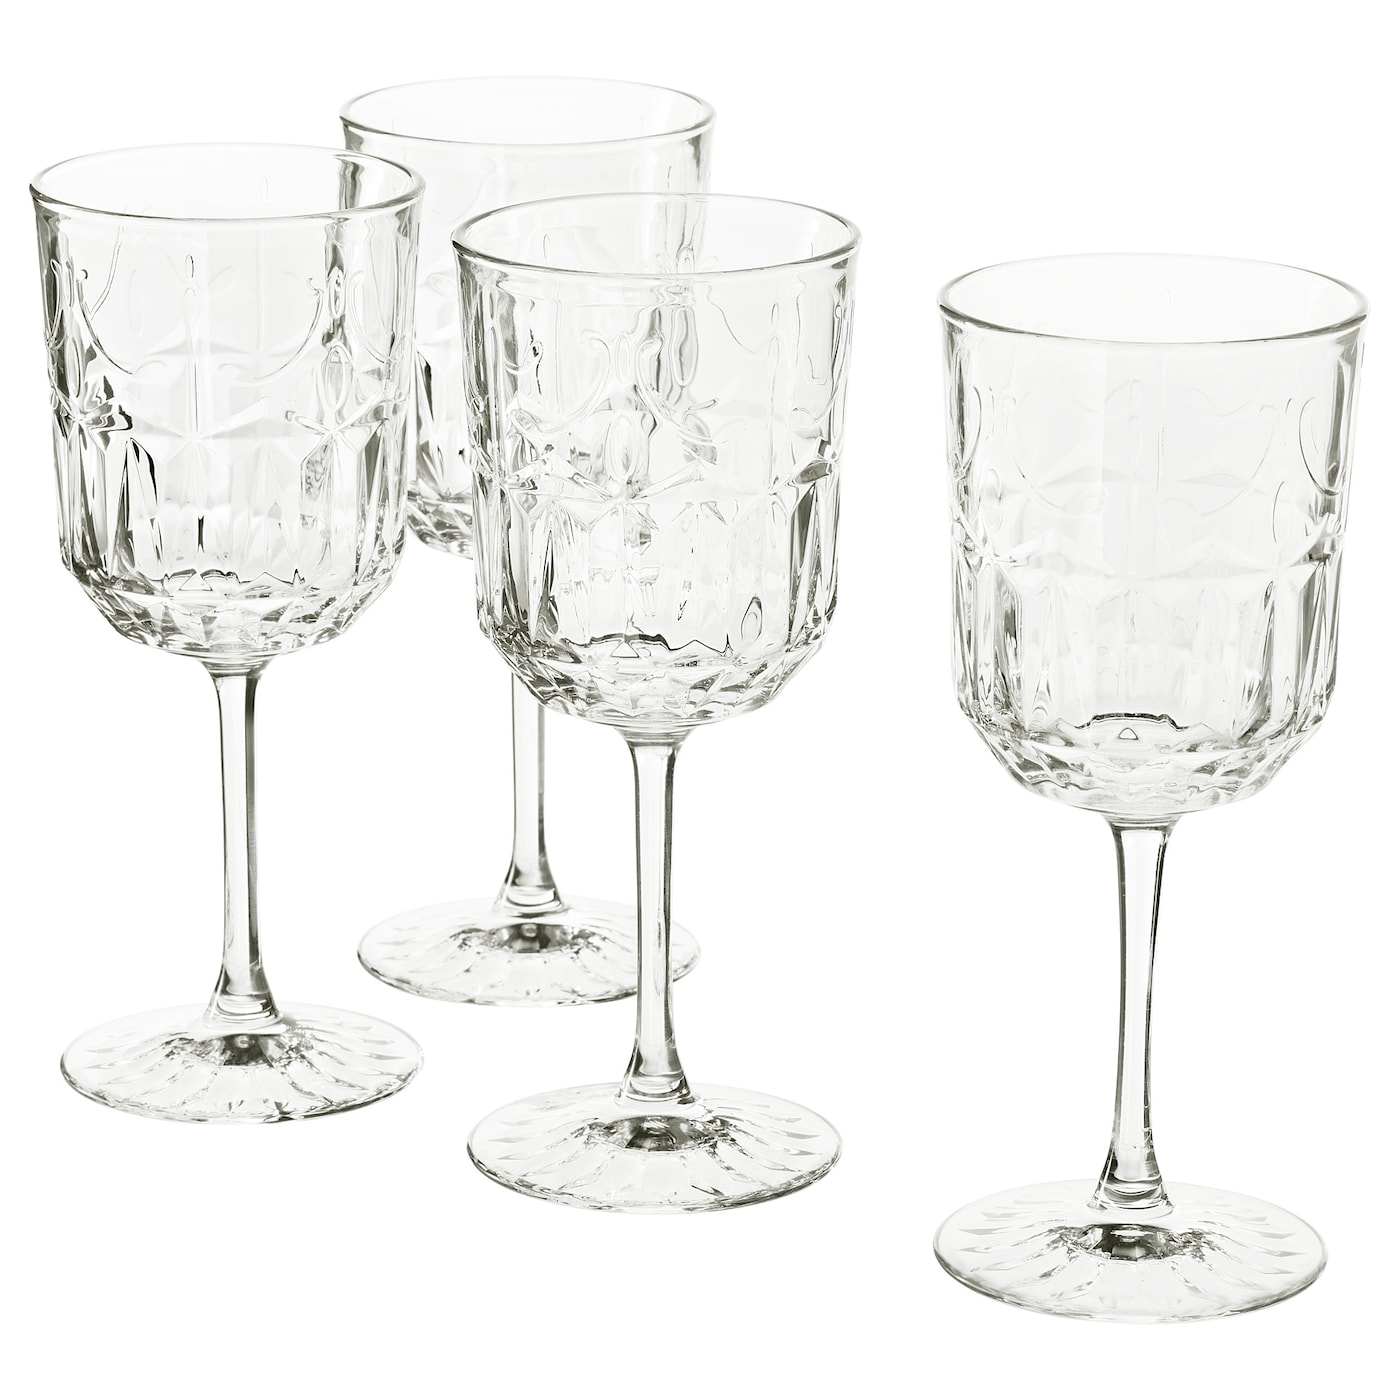 Набор бокалов для вина, 4 шт. - IKEA SÄLLSKAPLIG/SALLSKAPLIG, 270 мл, прозрачное стекло, СЭЛЛЬСКАПЛИГ ИКЕА